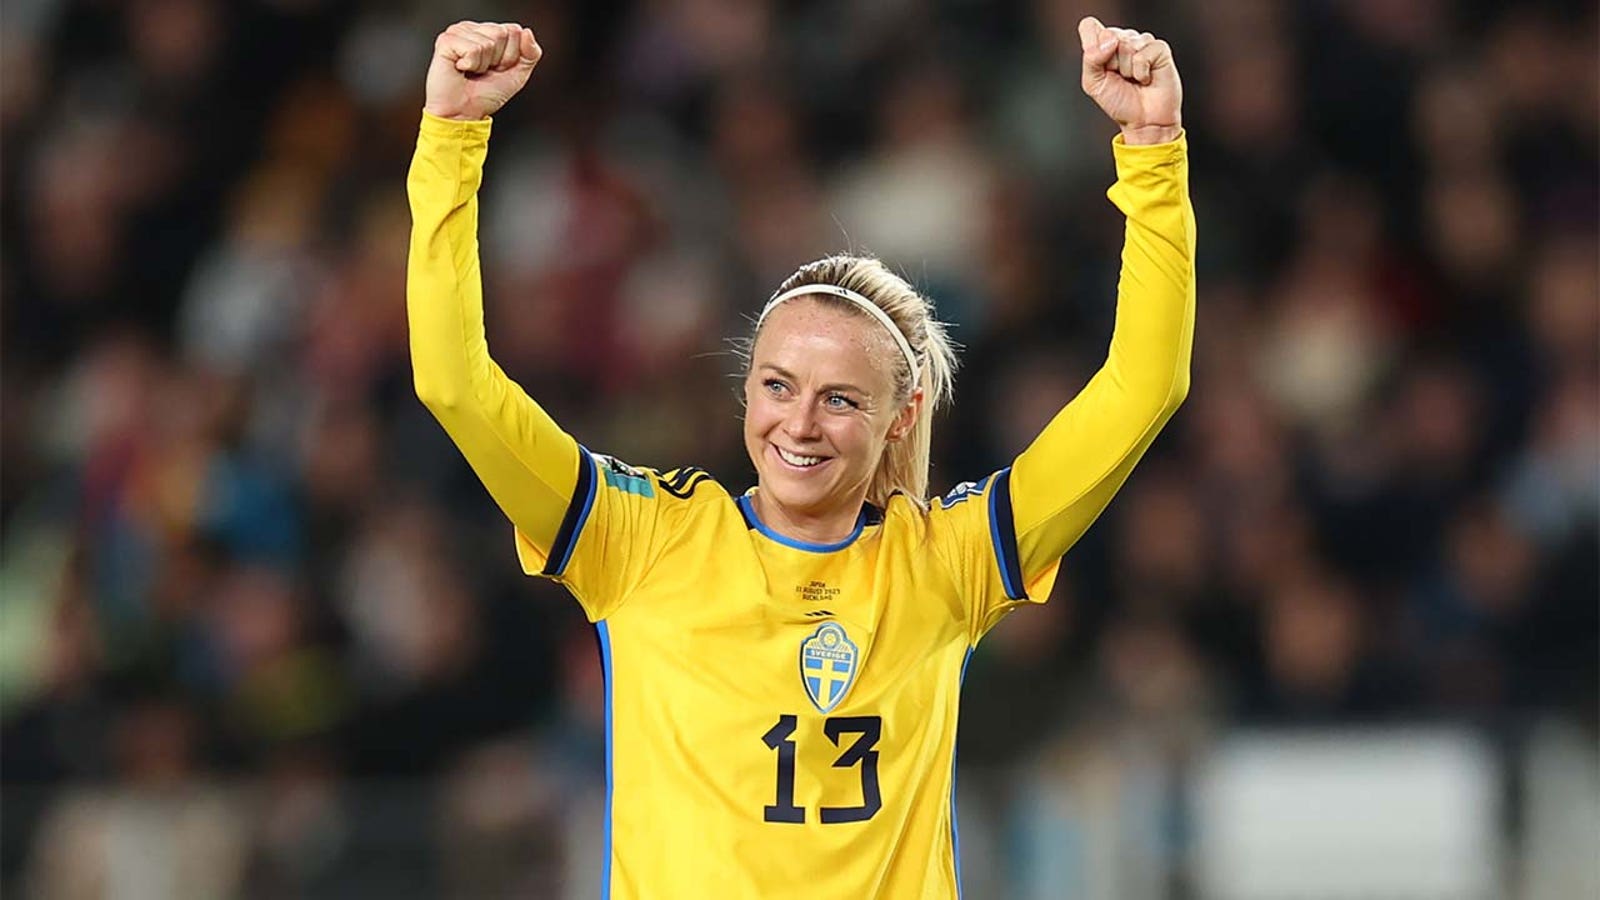 Sweden's Amanda Ellstedt scores a goal against Japan on 32 minutes